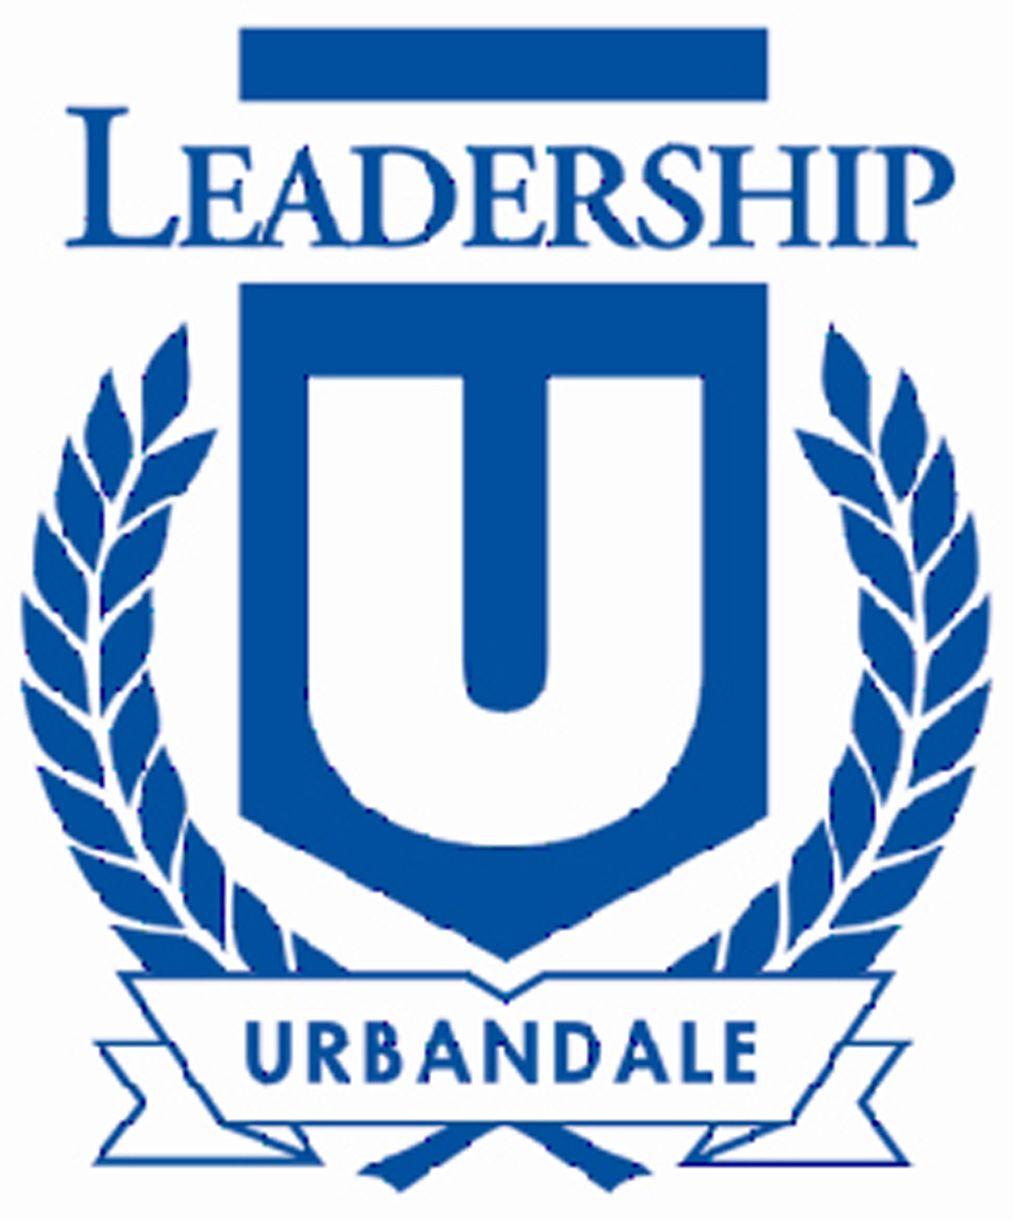 Urbandale Logo - Leadership Urbandale Citizen University